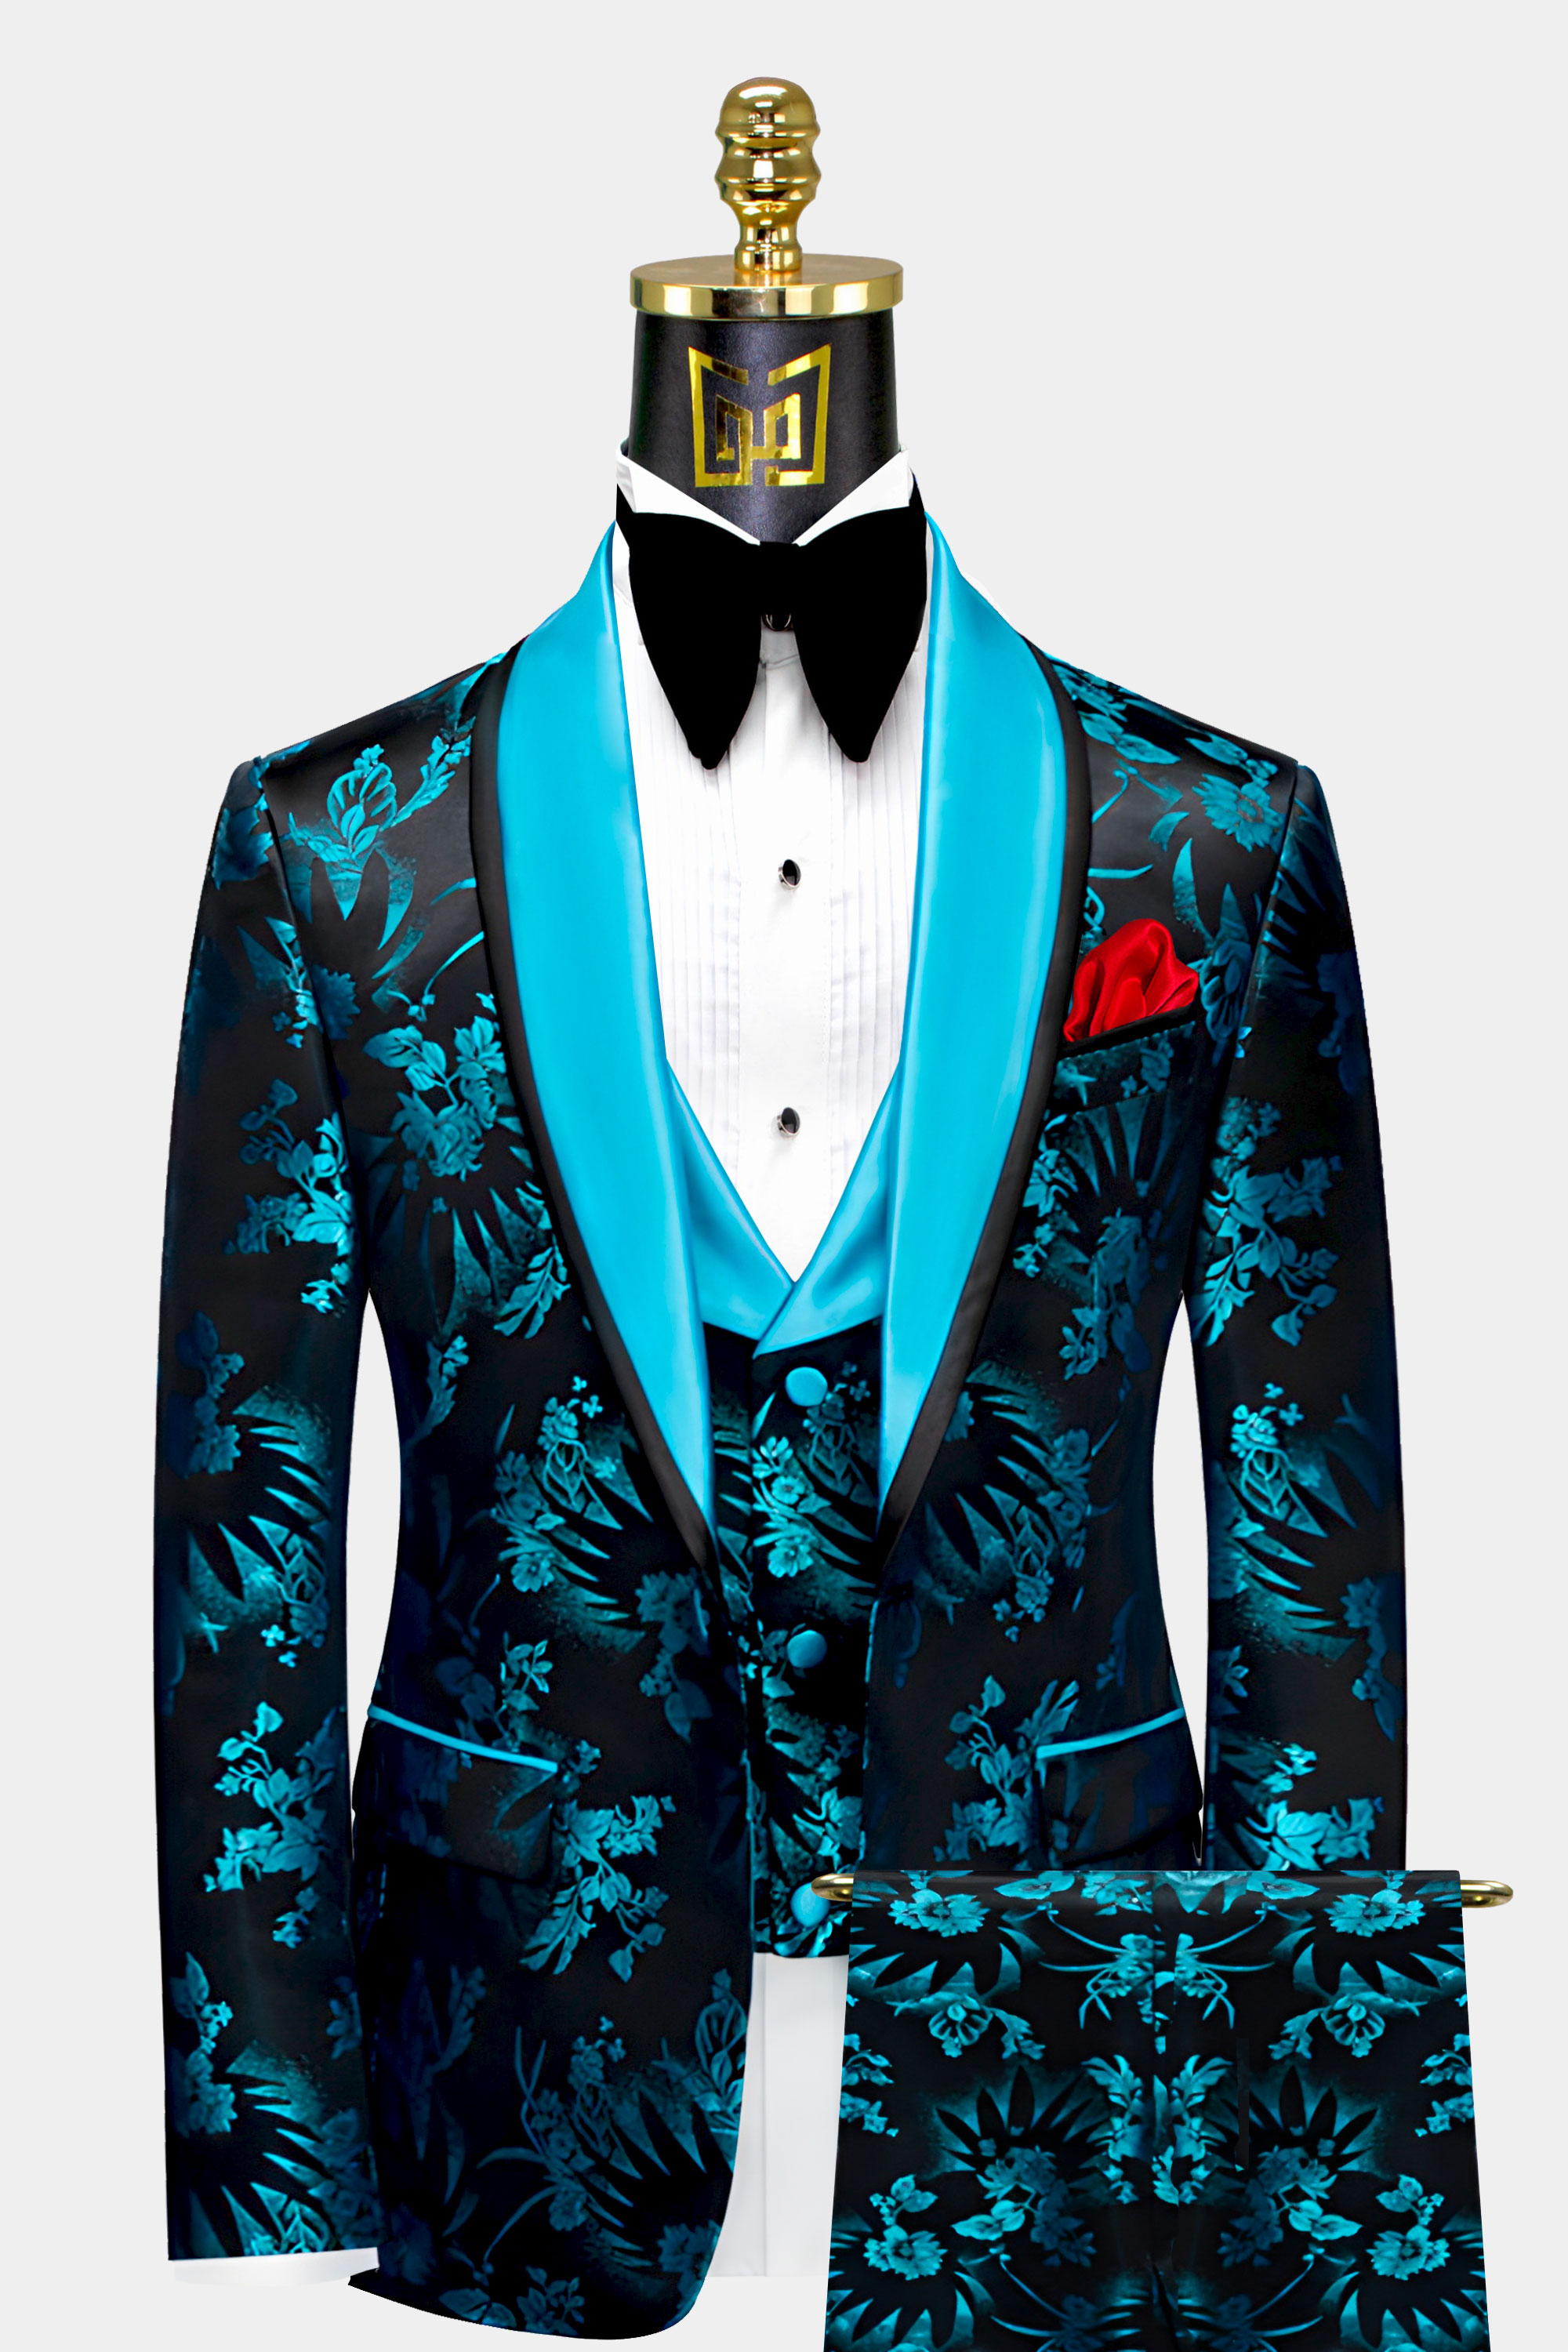 Mens Turquoise And Black Tuxedo Groom Wedding Suit For Men From Gentlemansguru.com  